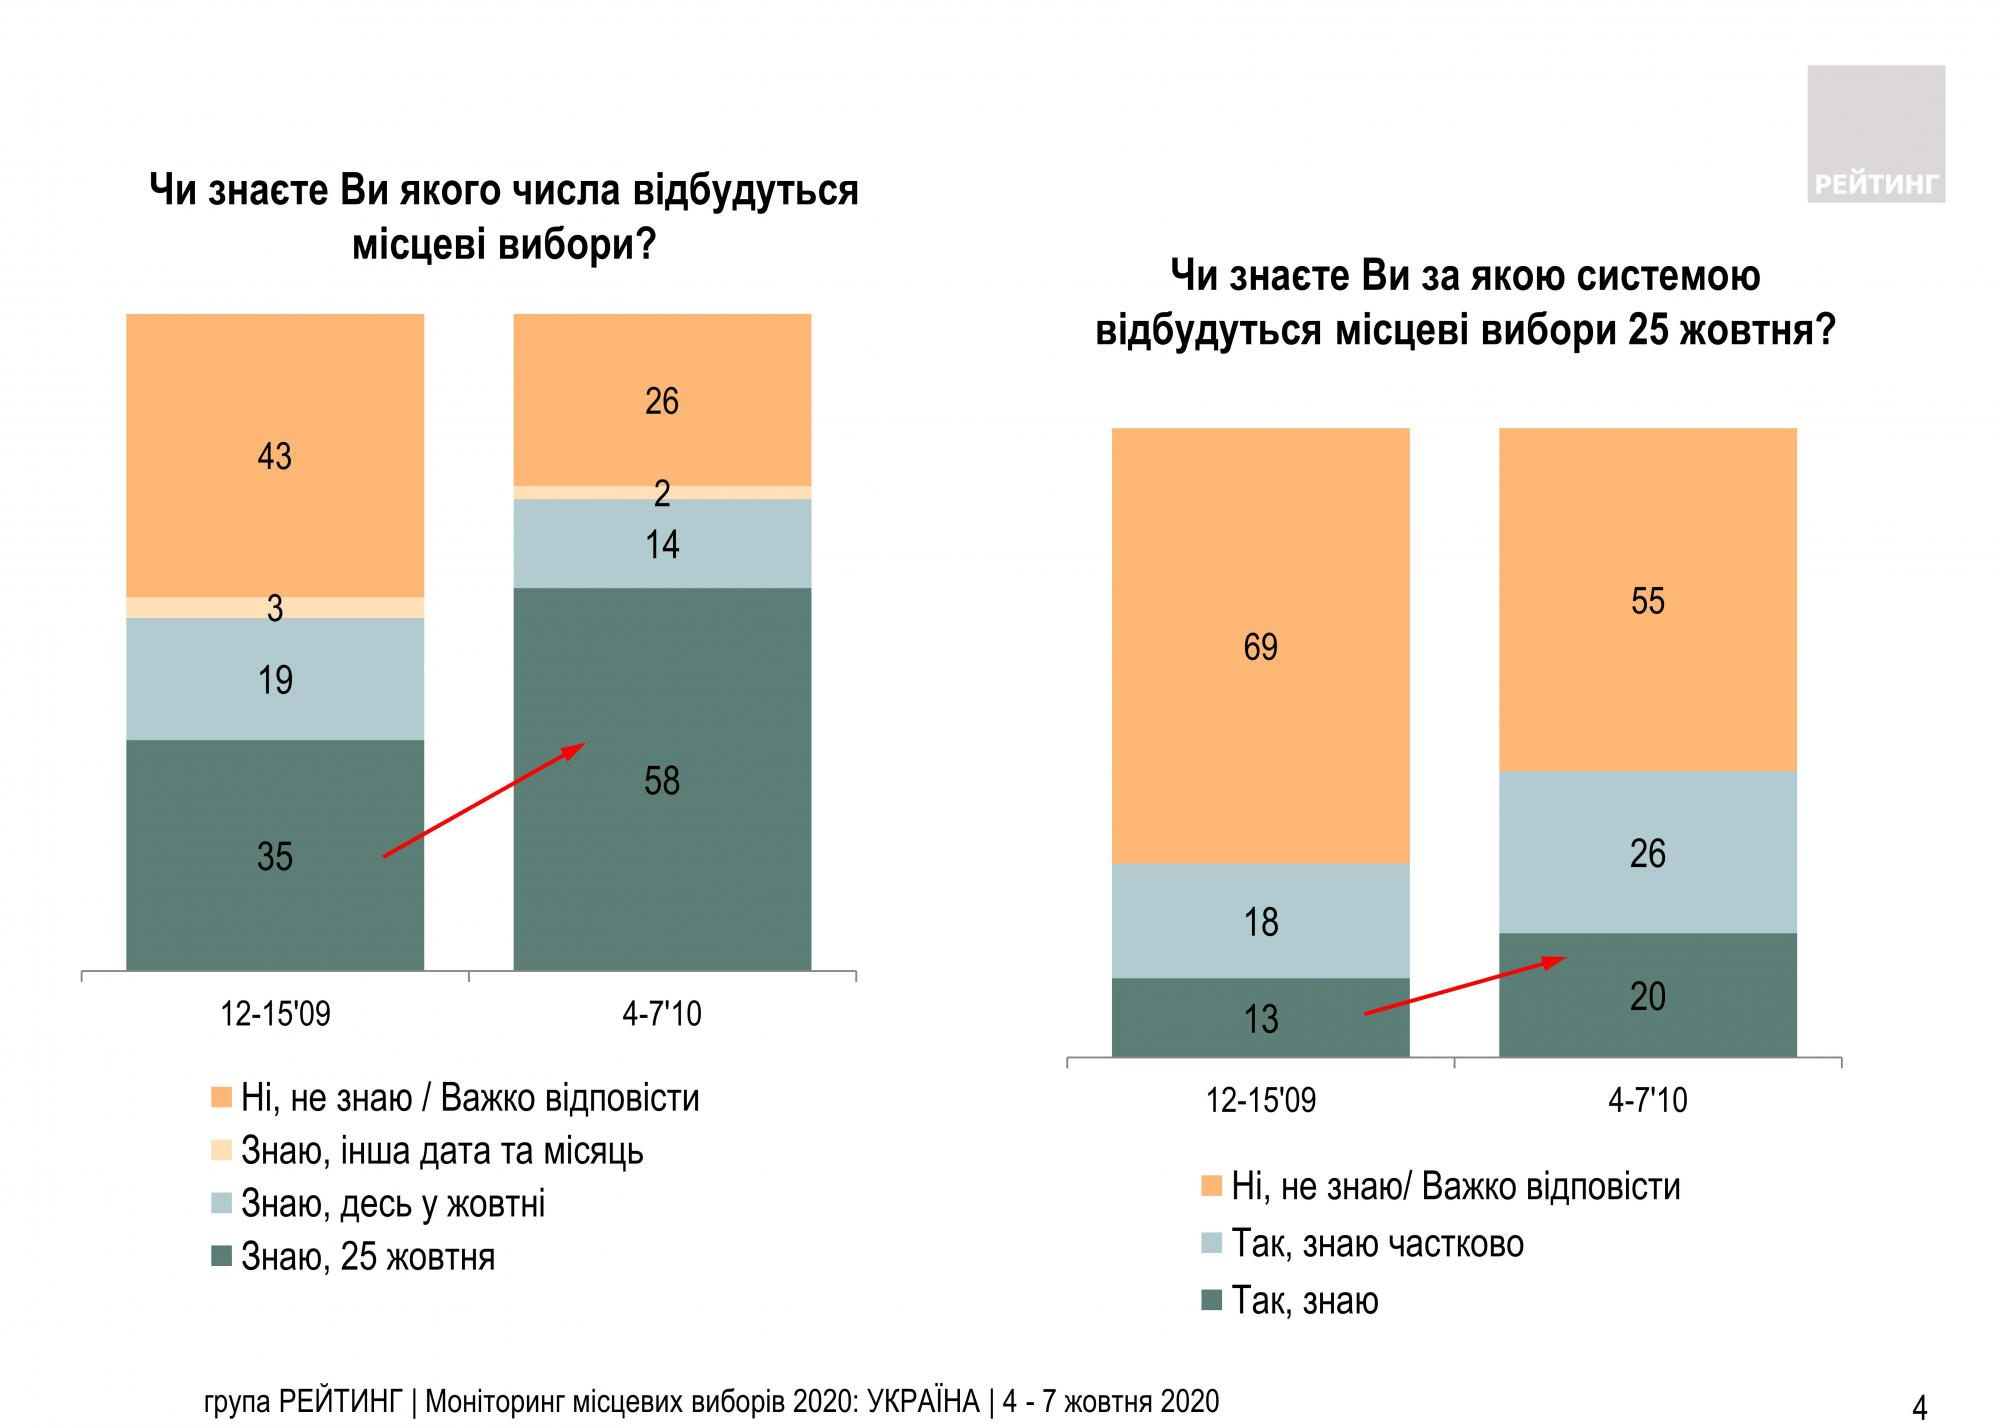 Большинство украинцев уверены в важности собственного голоса на выборах